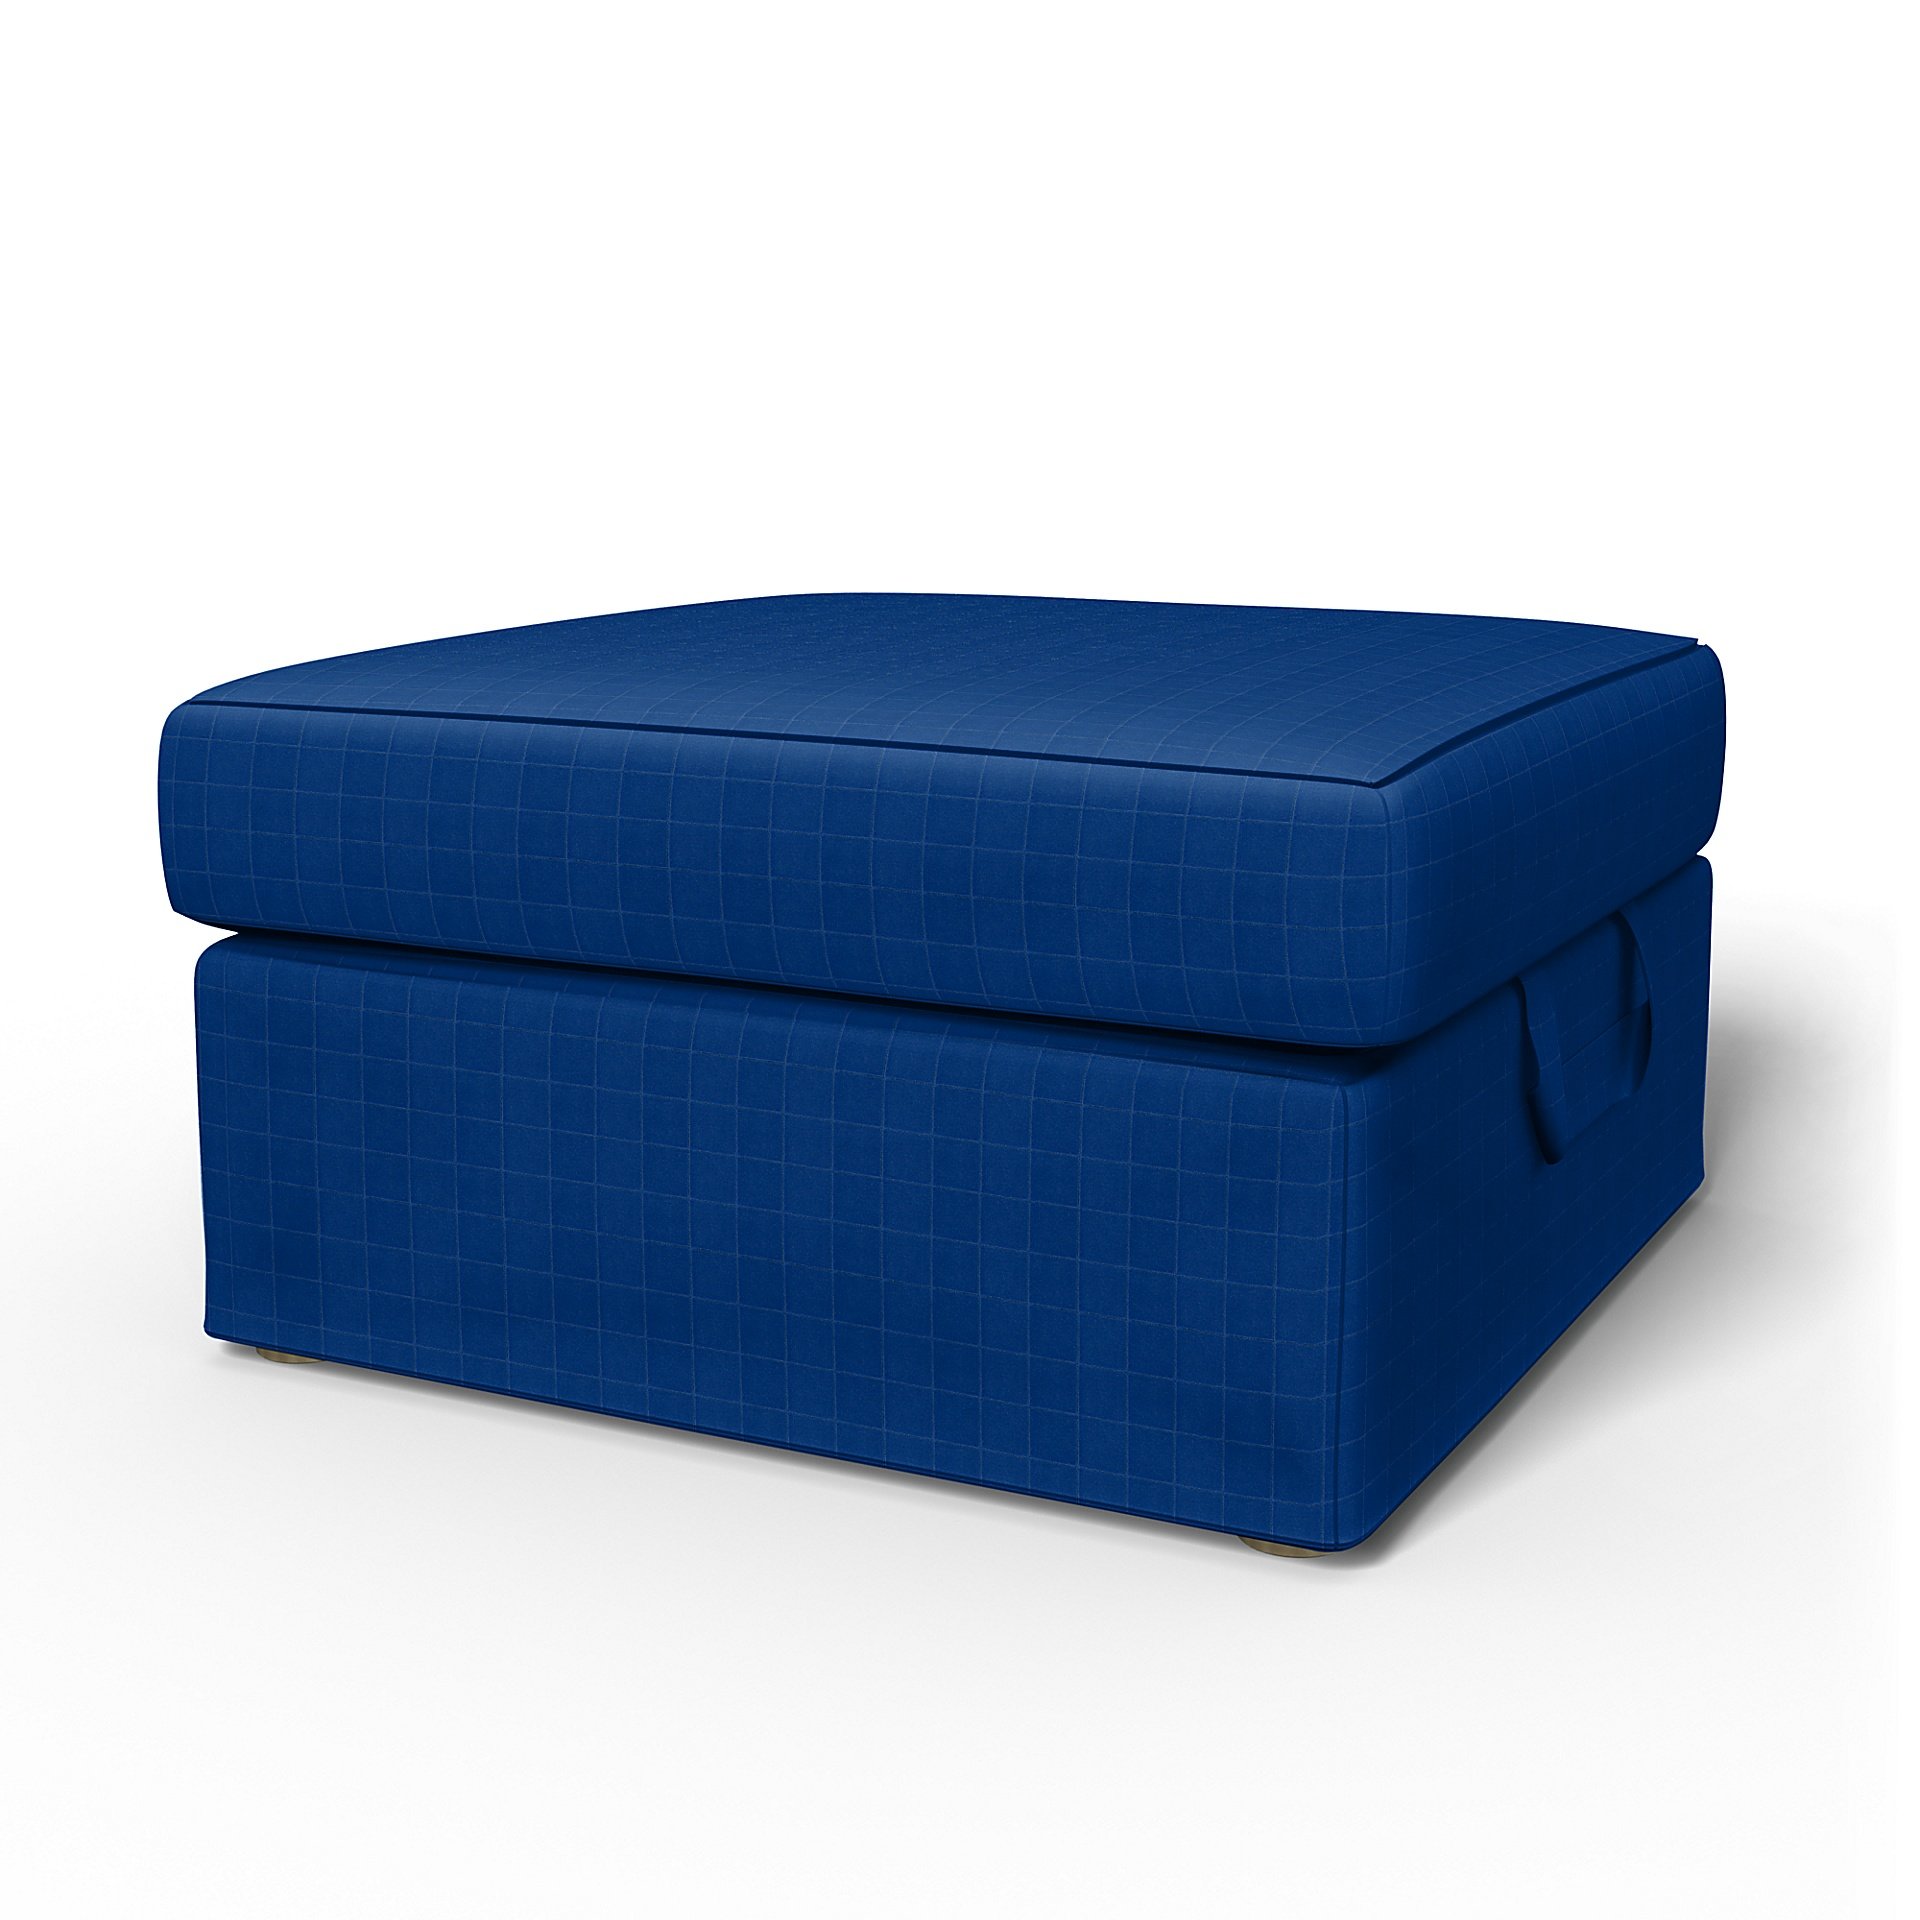 IKEA - Tomelilla Foto Footstool Cover, Lapis Blue, Velvet - Bemz